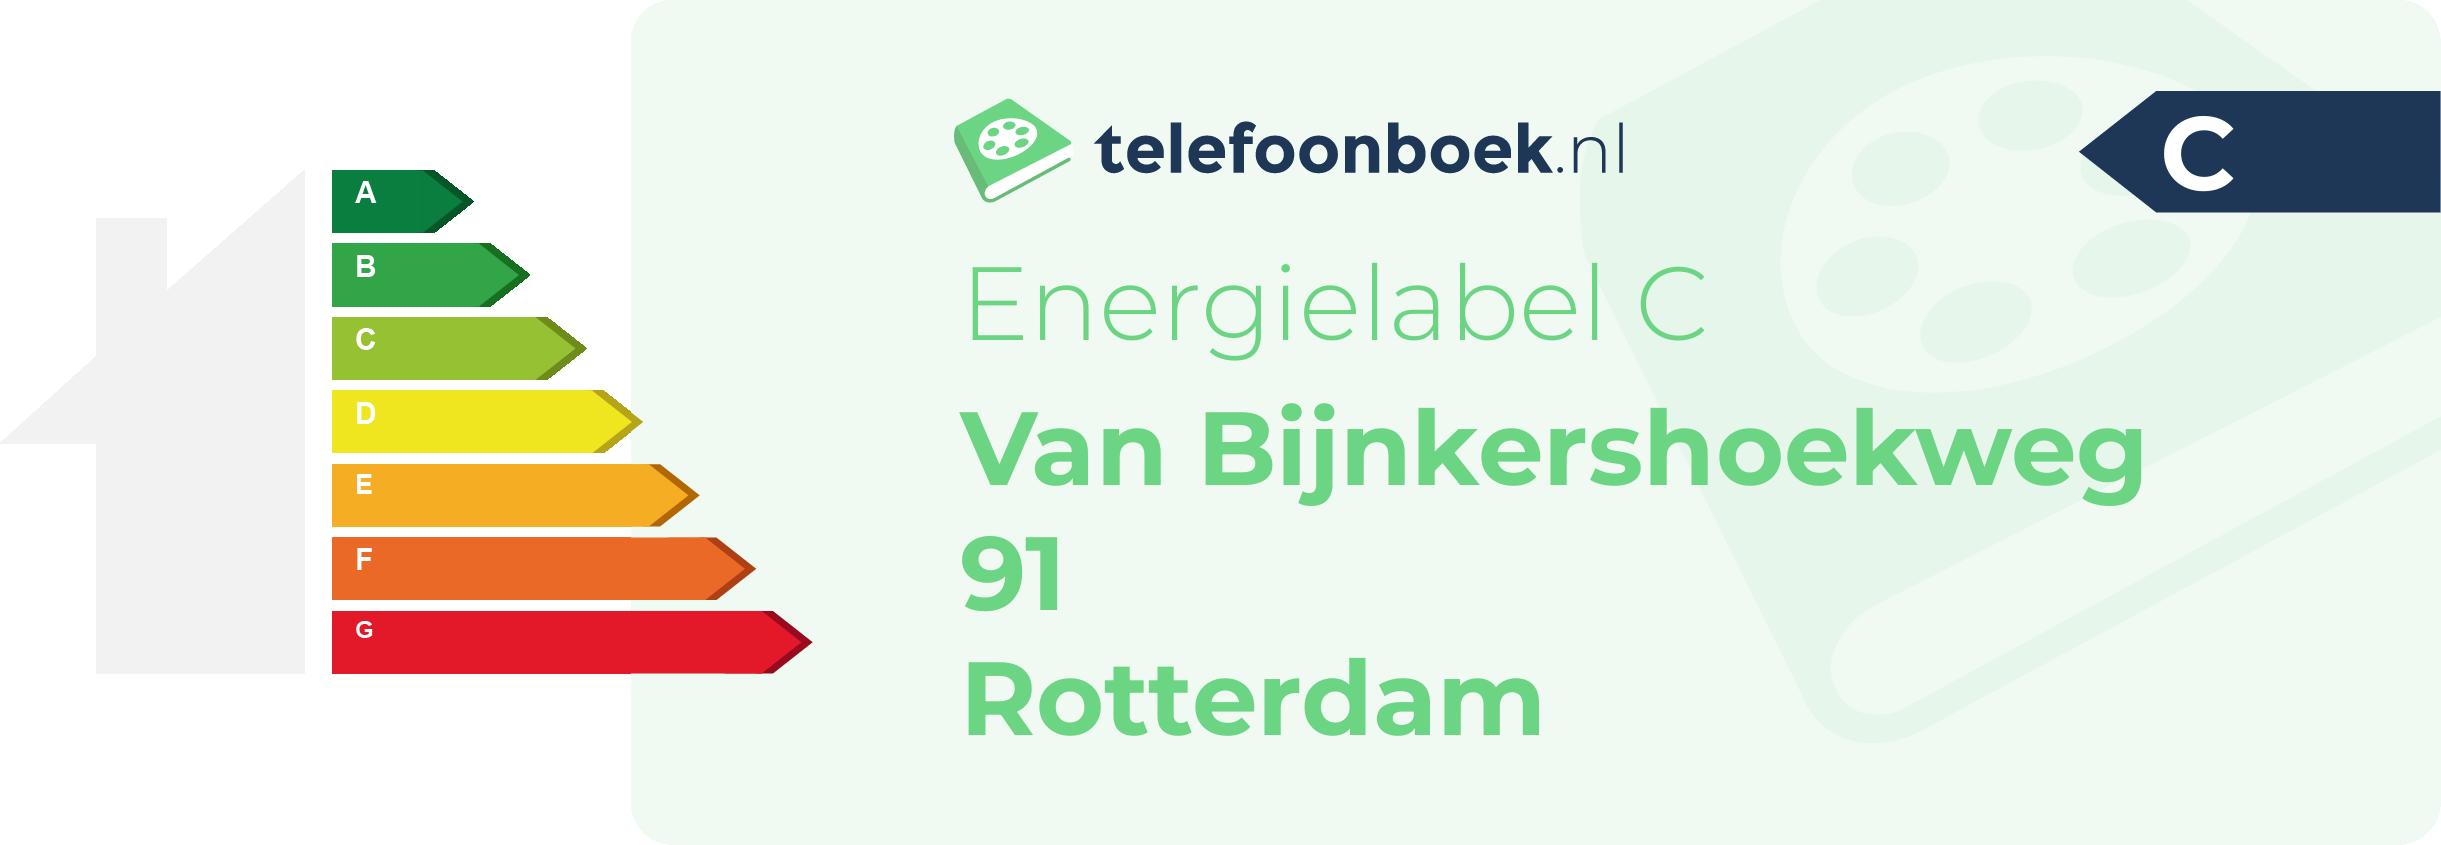 Energielabel Van Bijnkershoekweg 91 Rotterdam